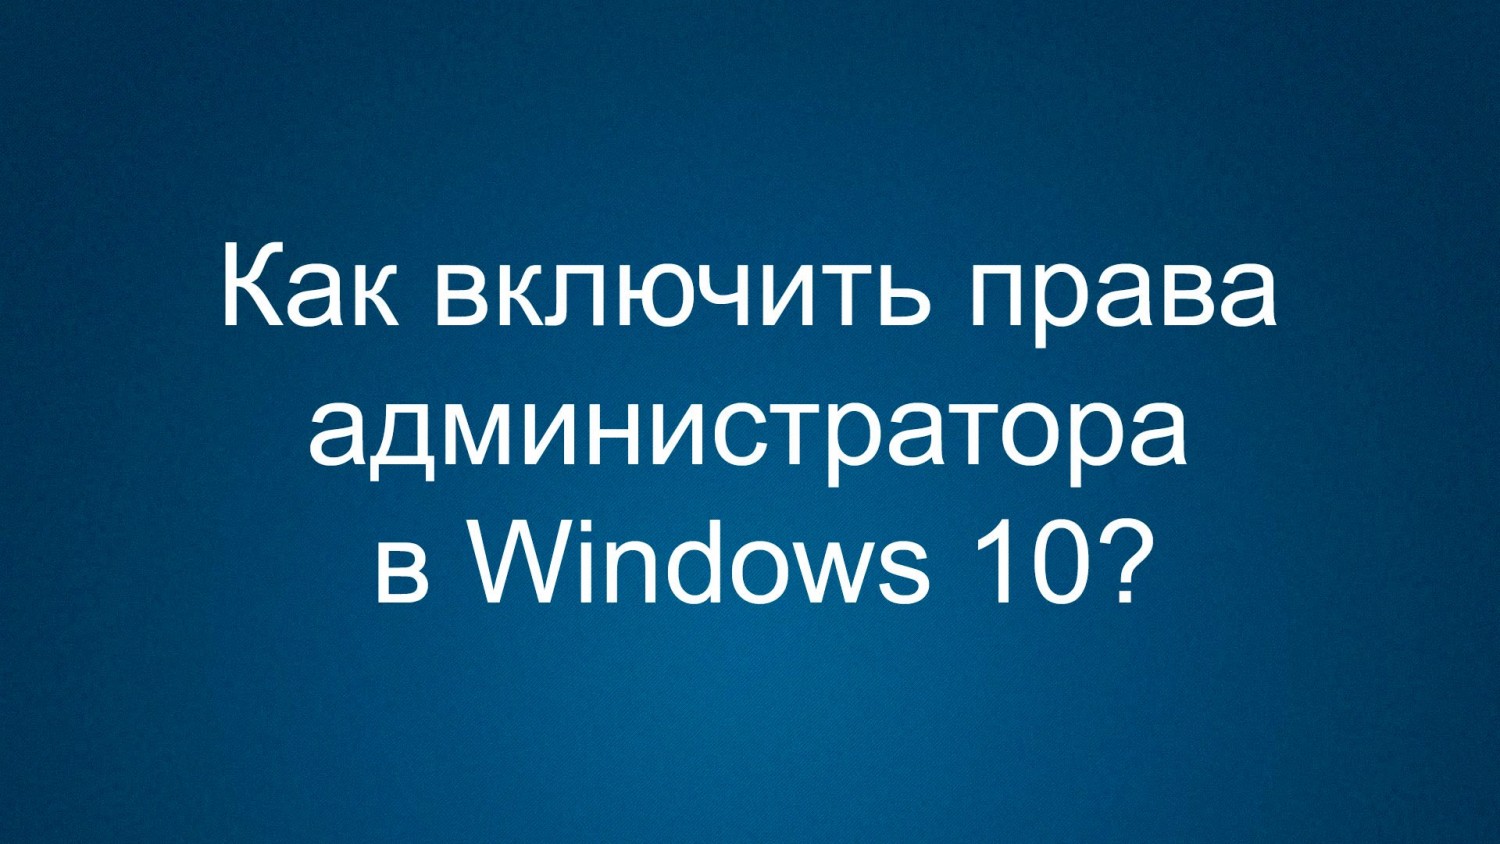 Как включить администратора в Windows 10?